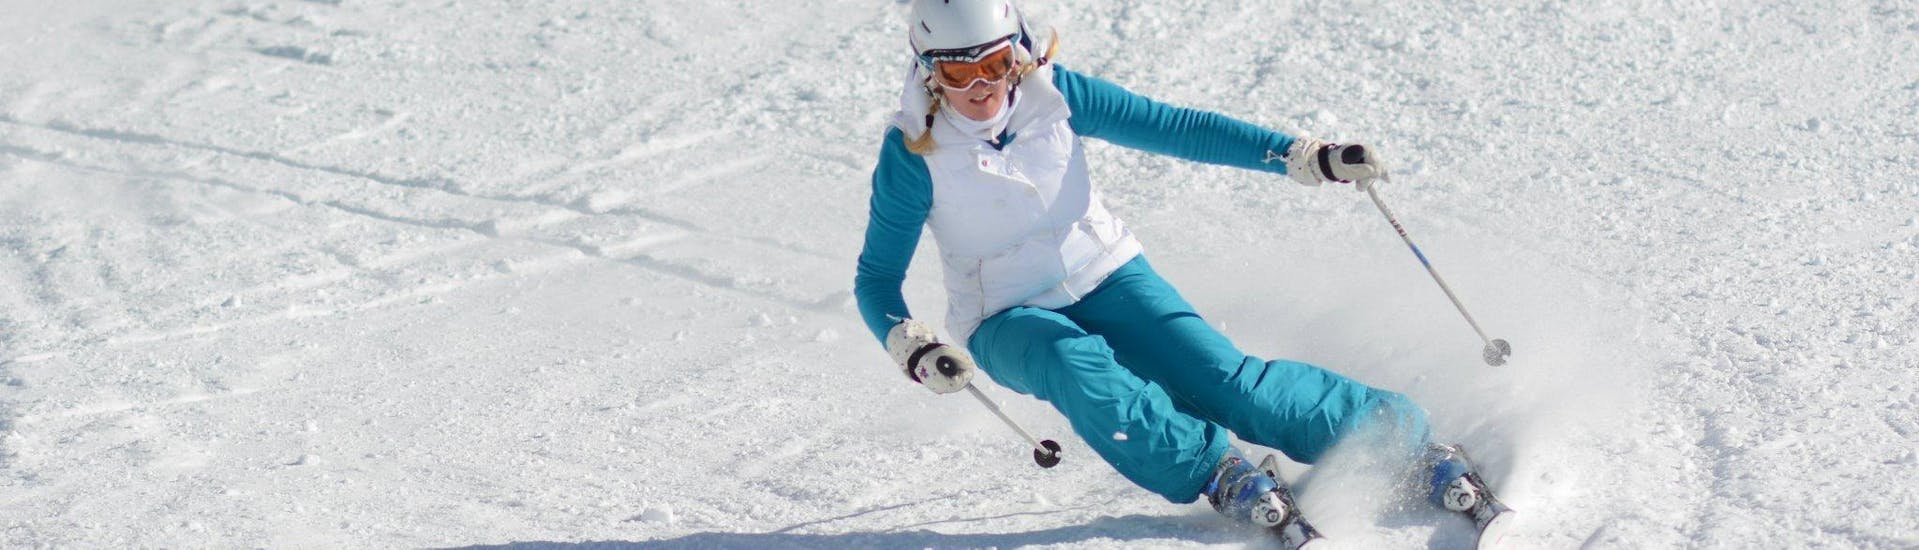 Privater Skikurs für Erwachsene aller Levels mit Skischule European Snowsport Zermatt - Hero image